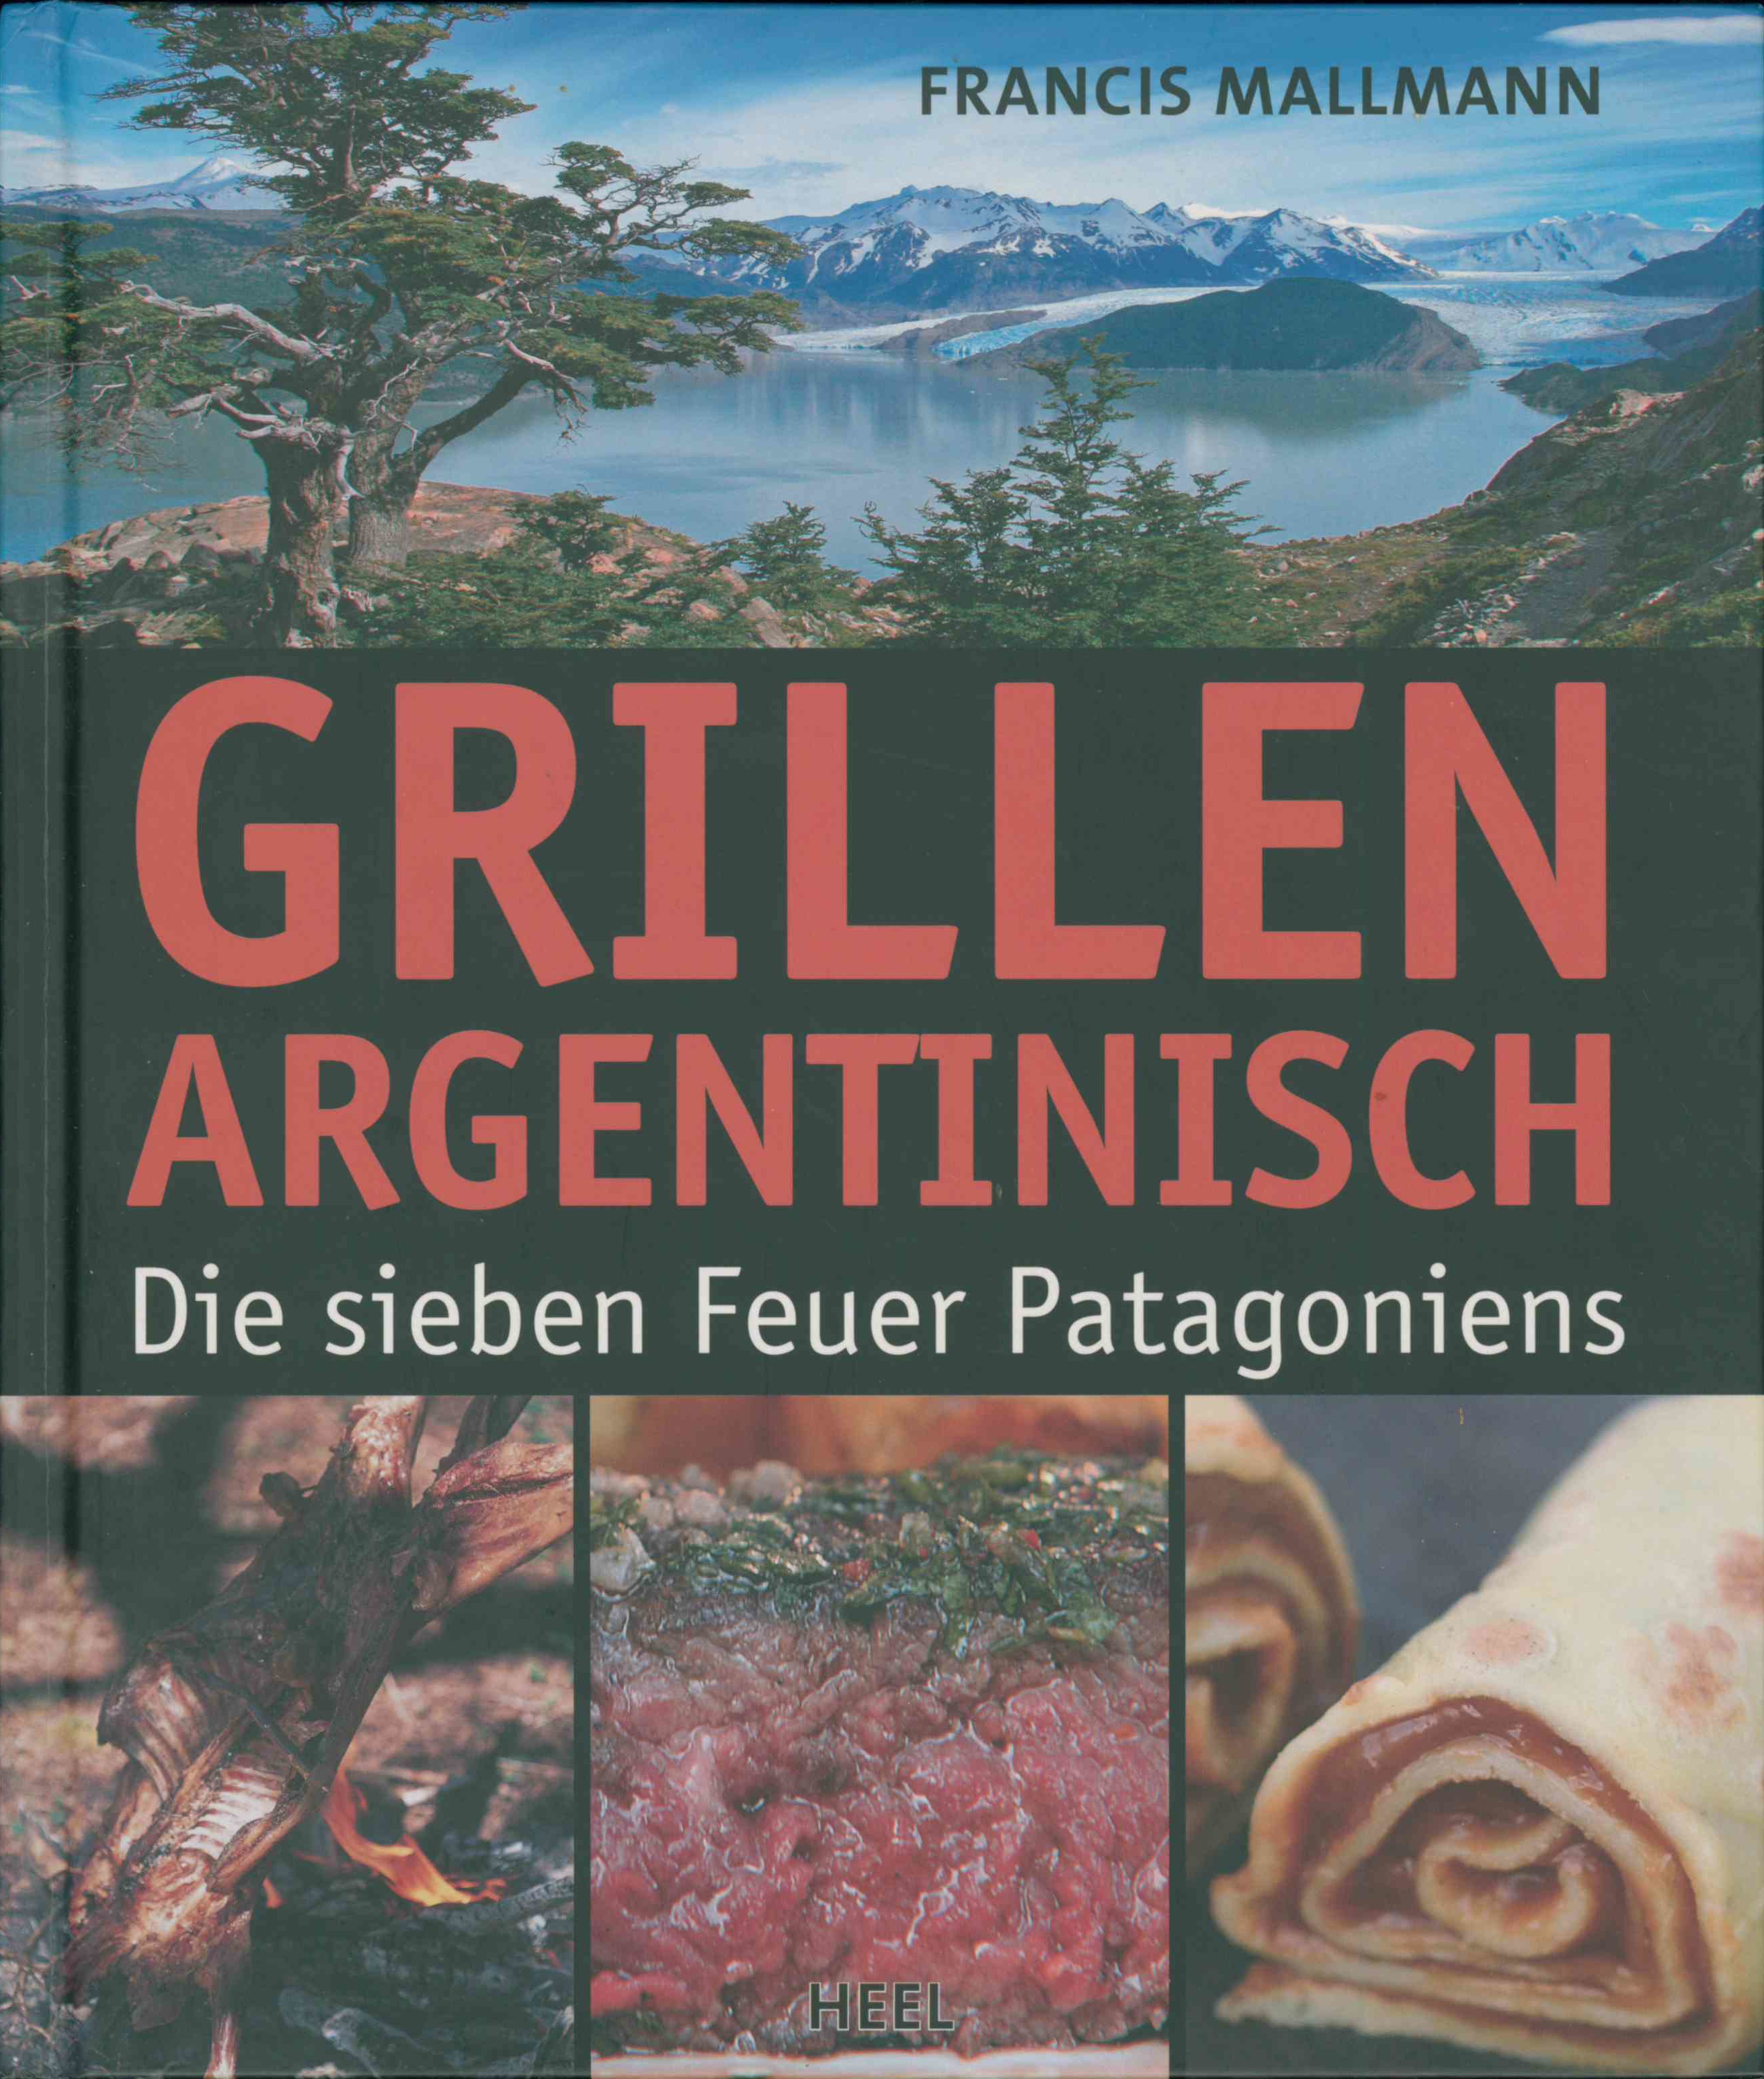 Francis Mallmann | Grillen Argentinisch - Die sieben Feuer Patagoniens